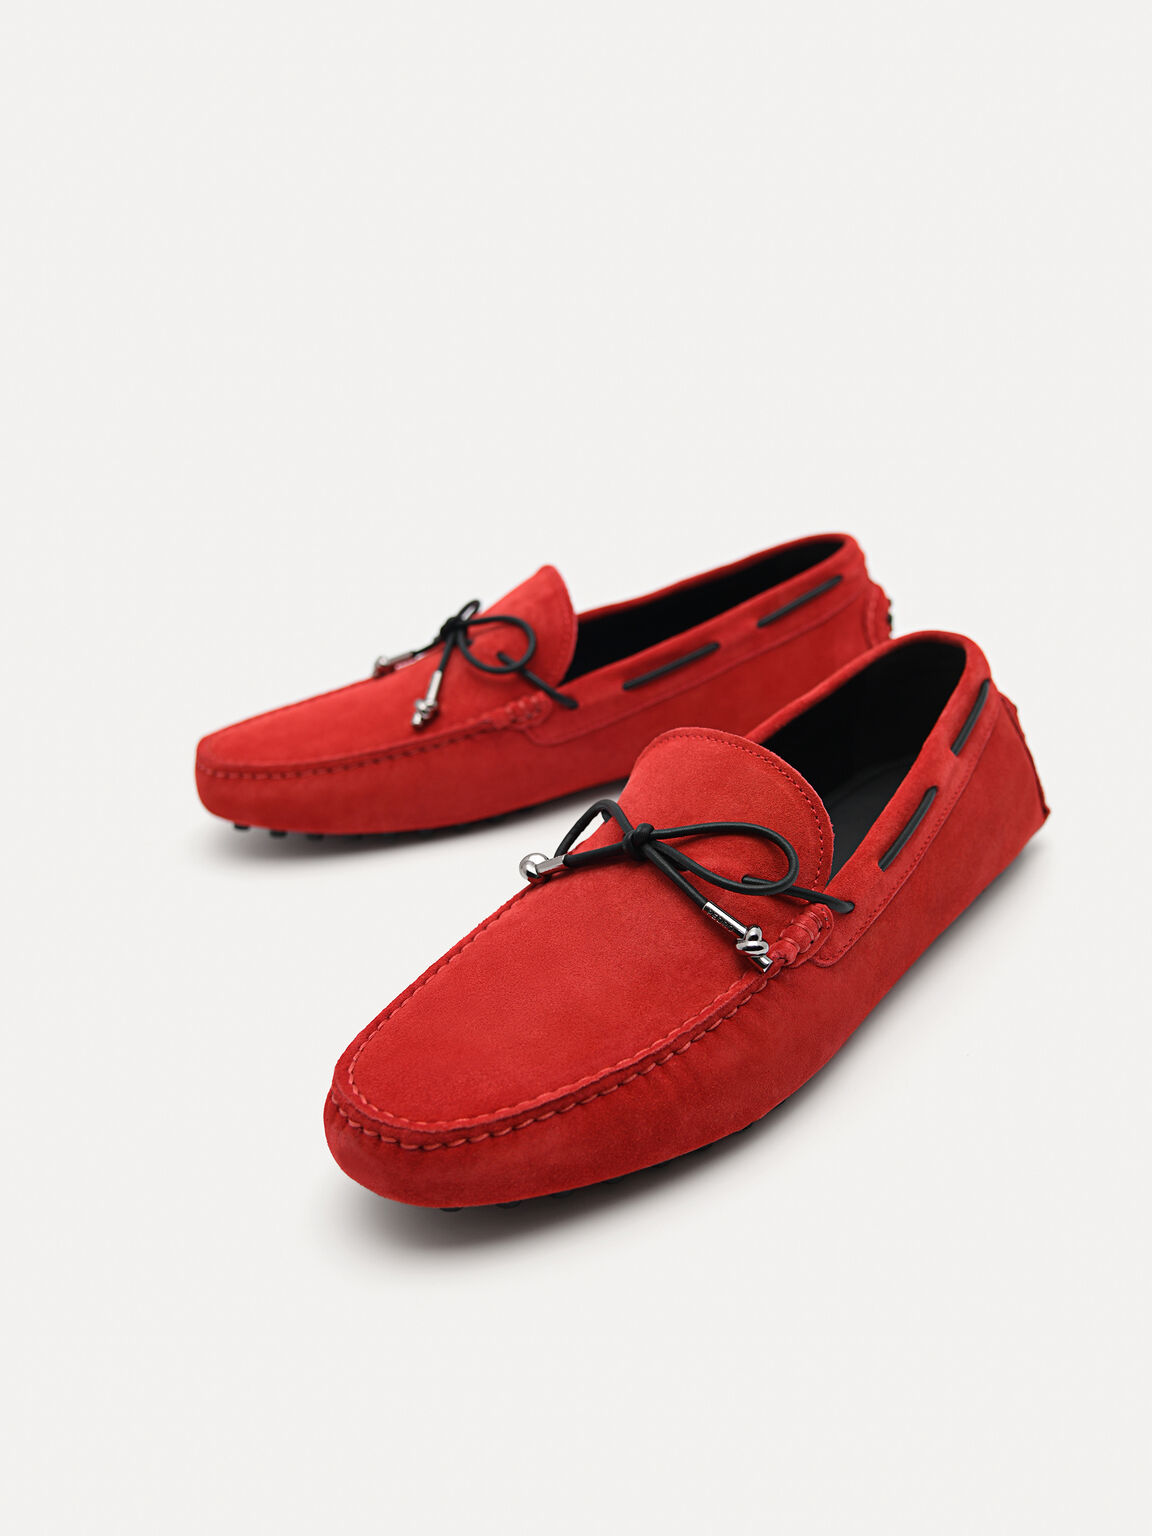 絨面皮革莫卡辛鞋配金屬裝飾鞋帶, 红色